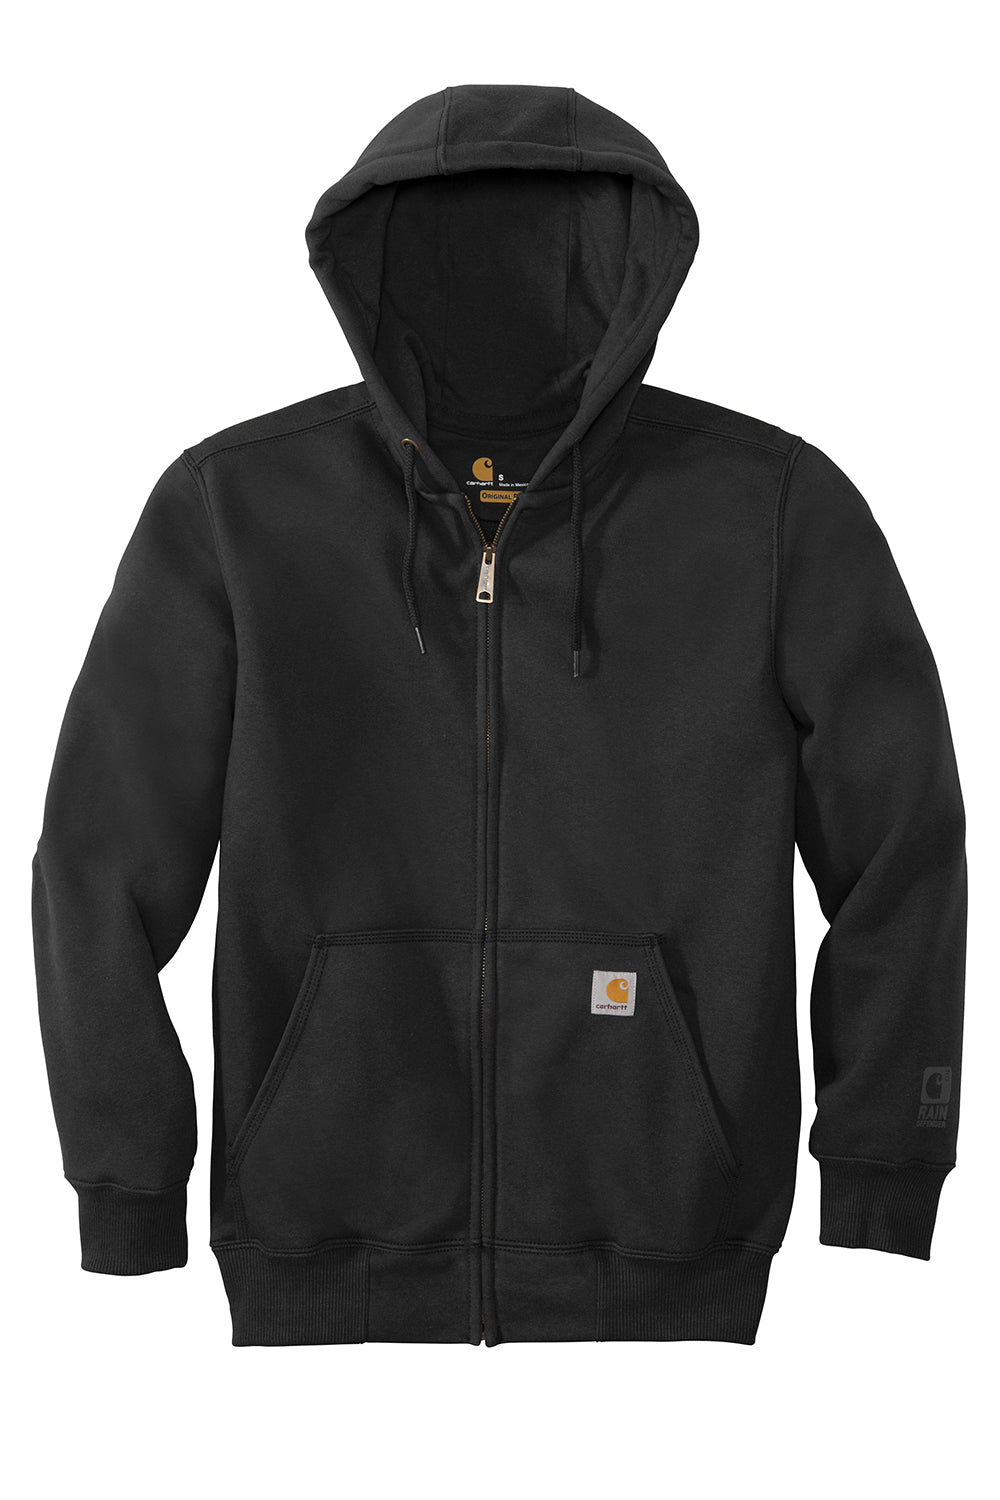 Carhartt CT100614 Mens Paxton Rain Defender Water Resistant Full Zip Hooded Sweatshirt Hoodie Black Flat Front